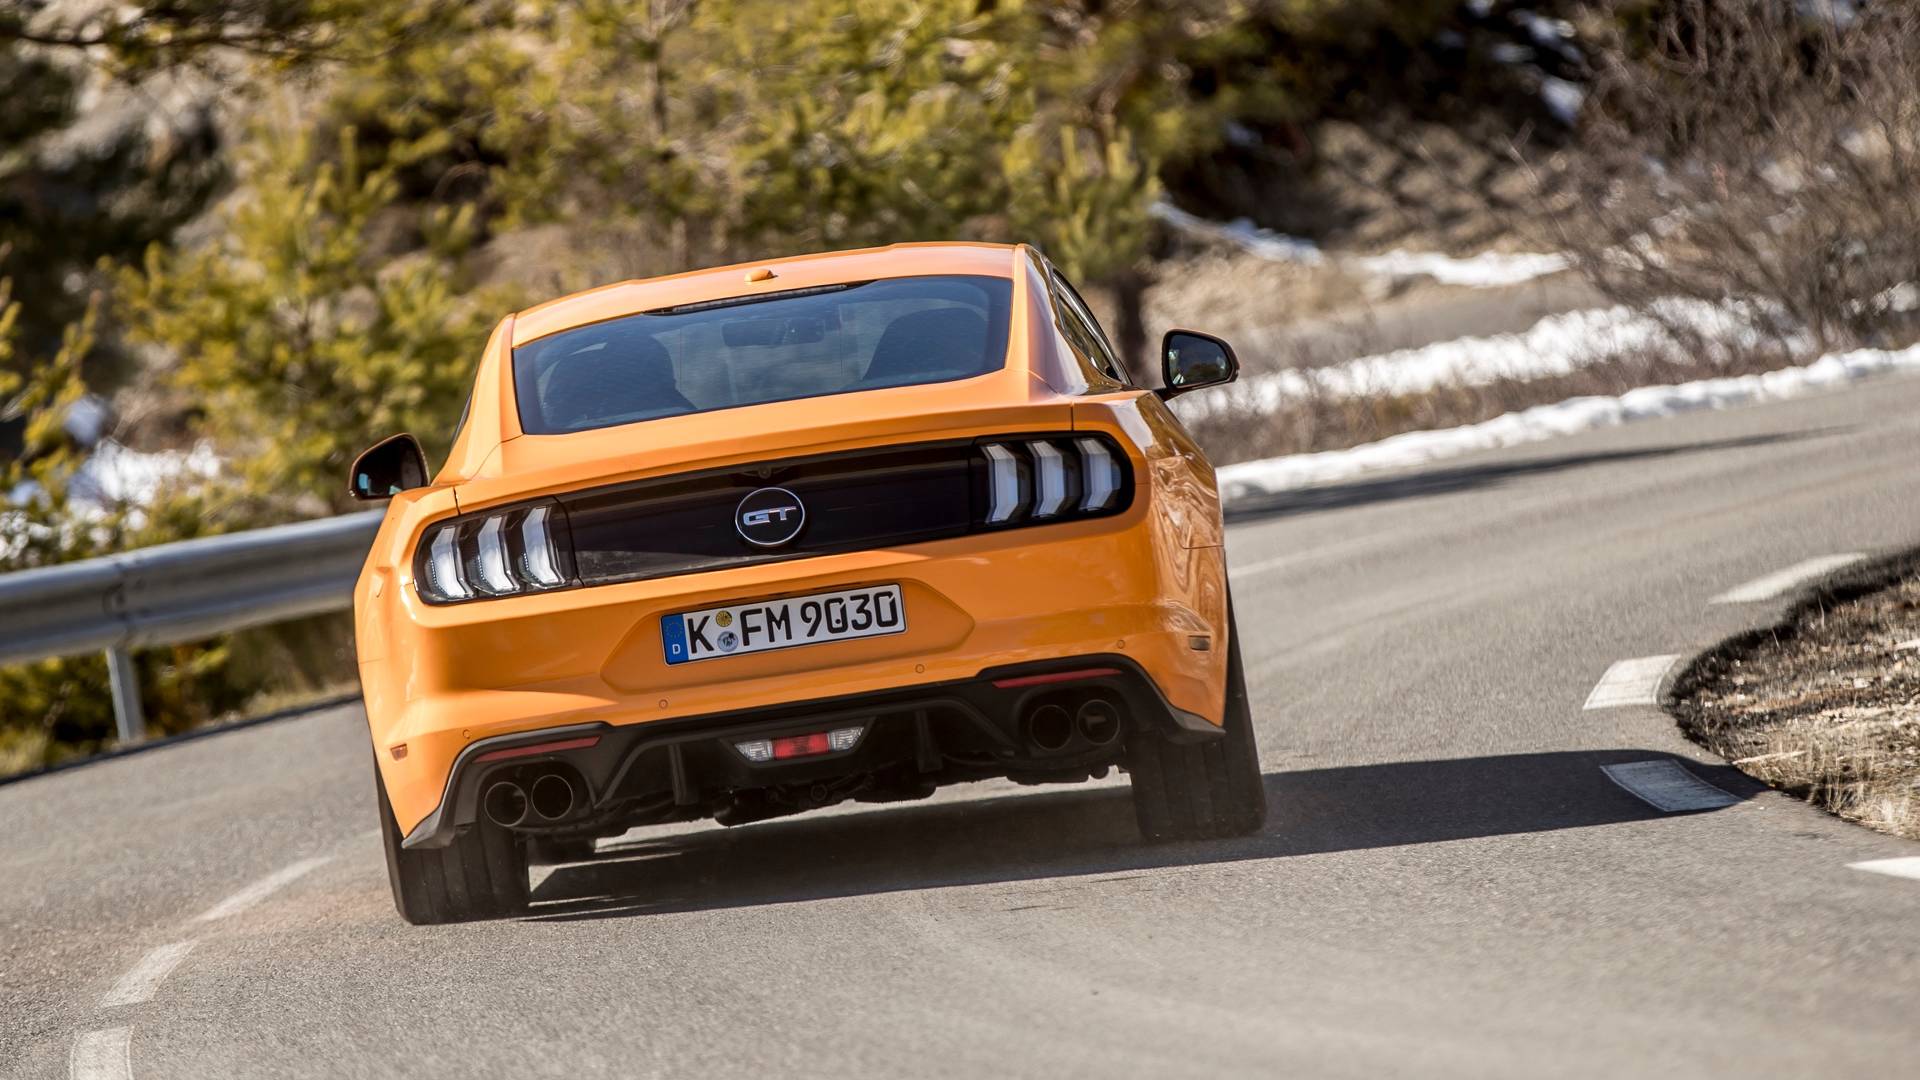 Lo que esperamos del próximo Ford Mustang: híbrido y con tracción total